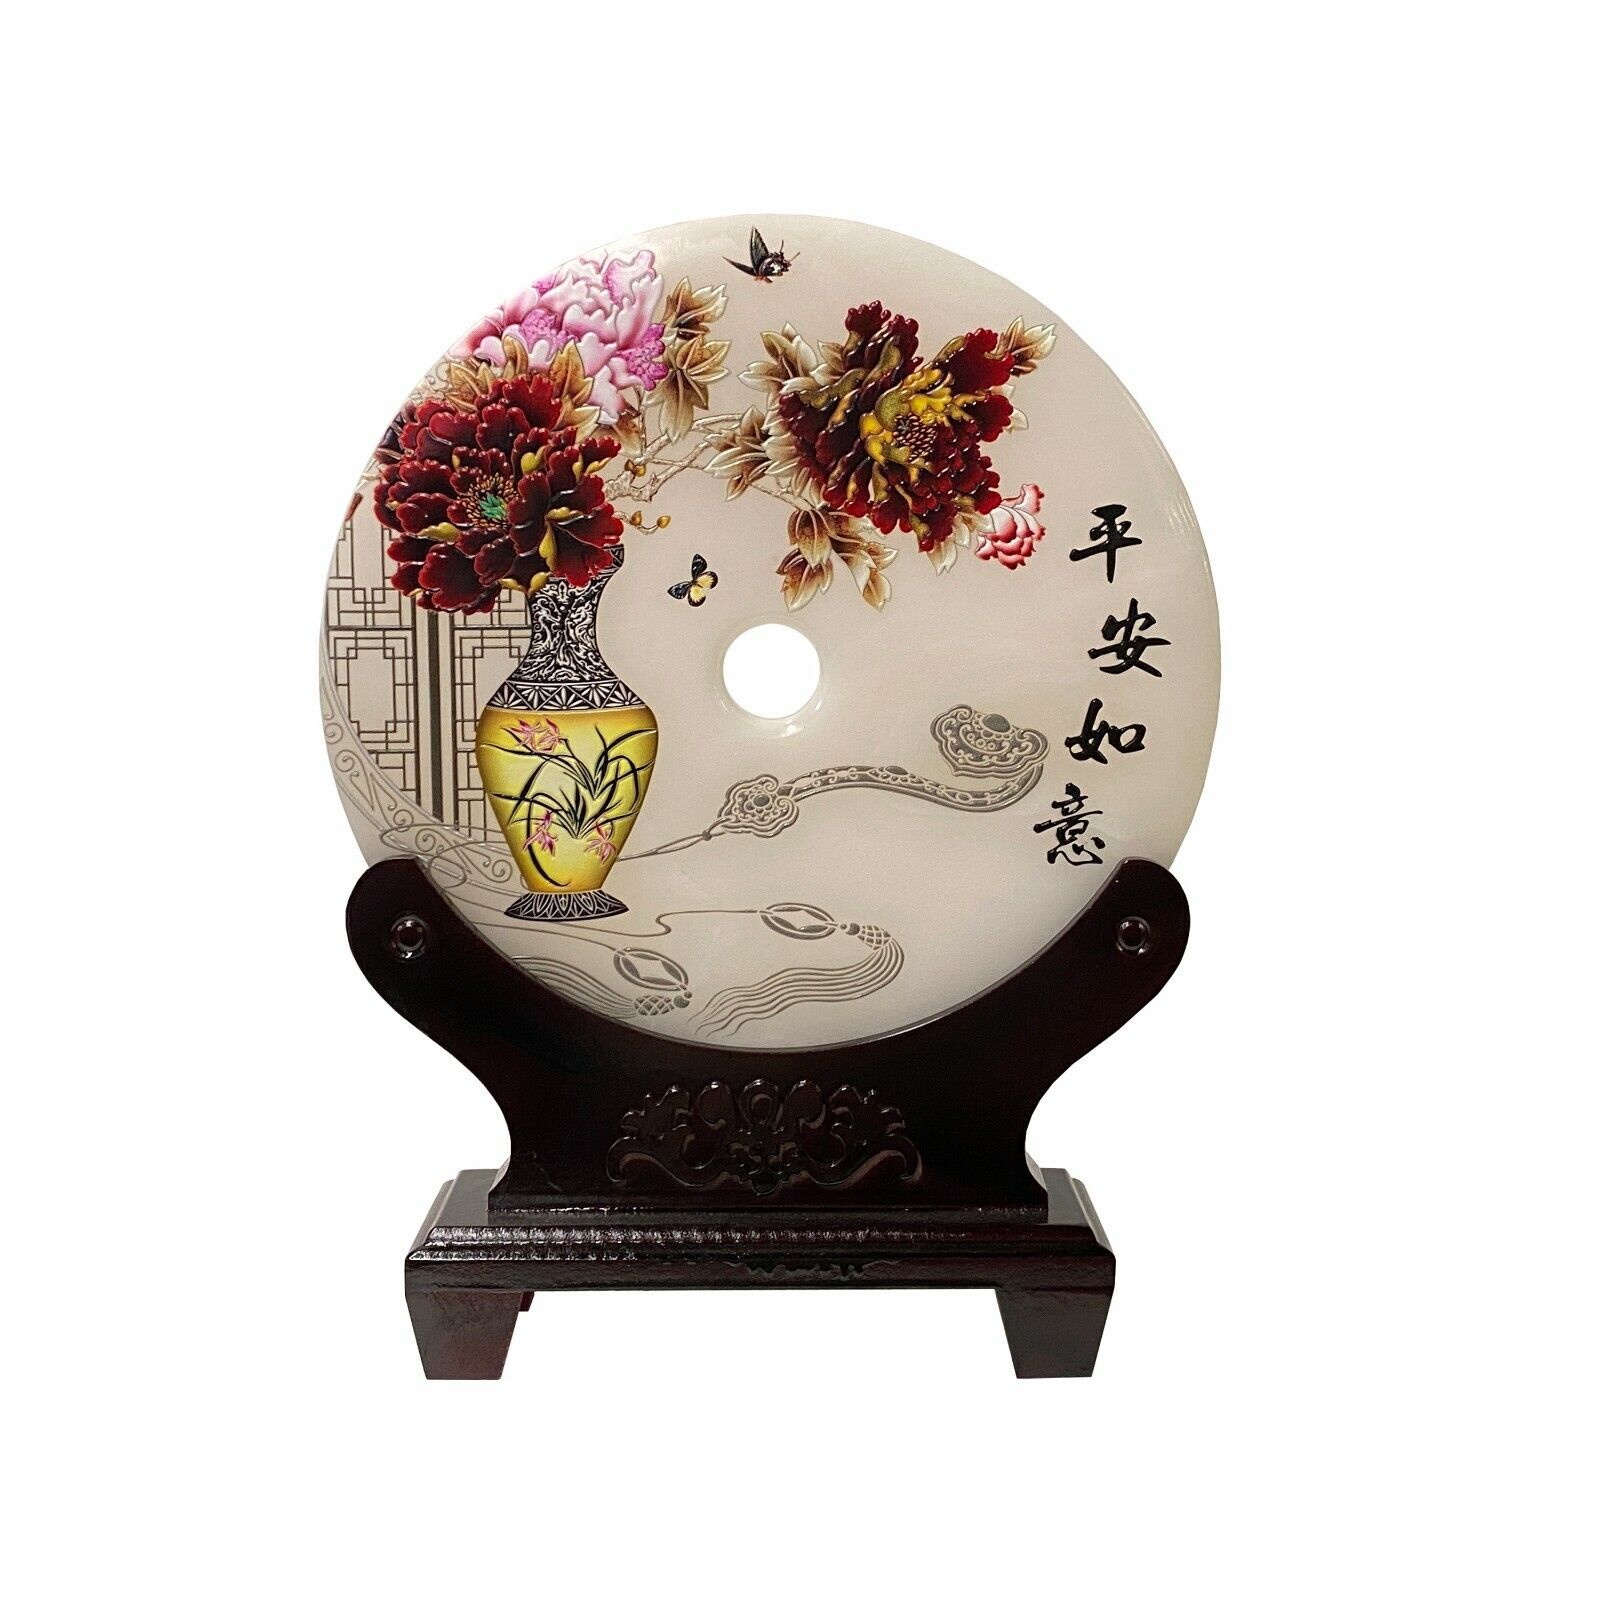 Chinese Natural Stone Round Flower Vase Ru Yi Graphic Display ws1840